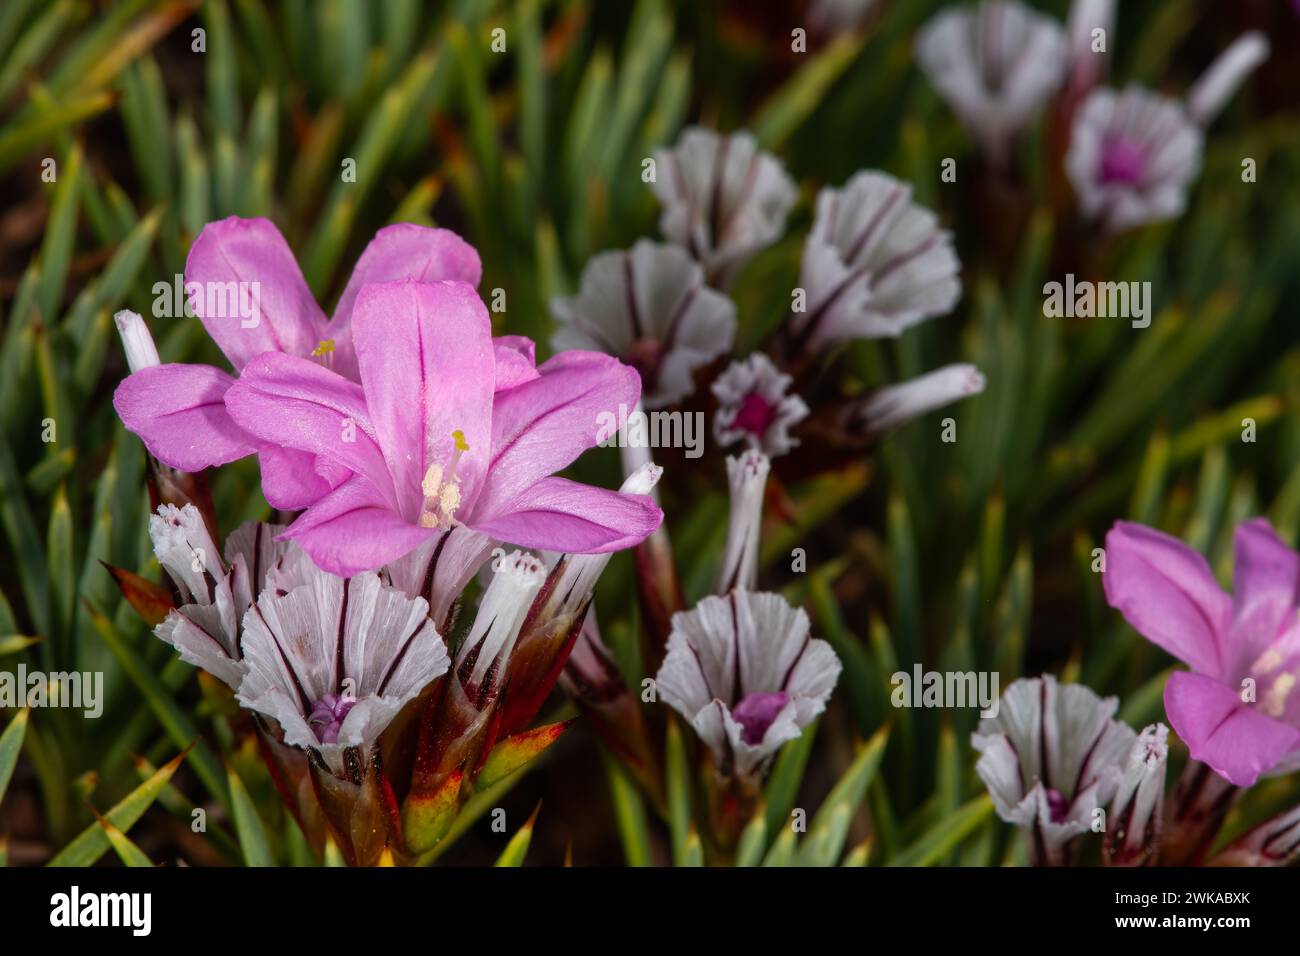 Acantholimon acerosum appartiene alla famiglia delle Plumbaginaceae e cresce su terreni sassosi e calcarei. In natura è un fiore spinoso di colore rosa. Foto Stock